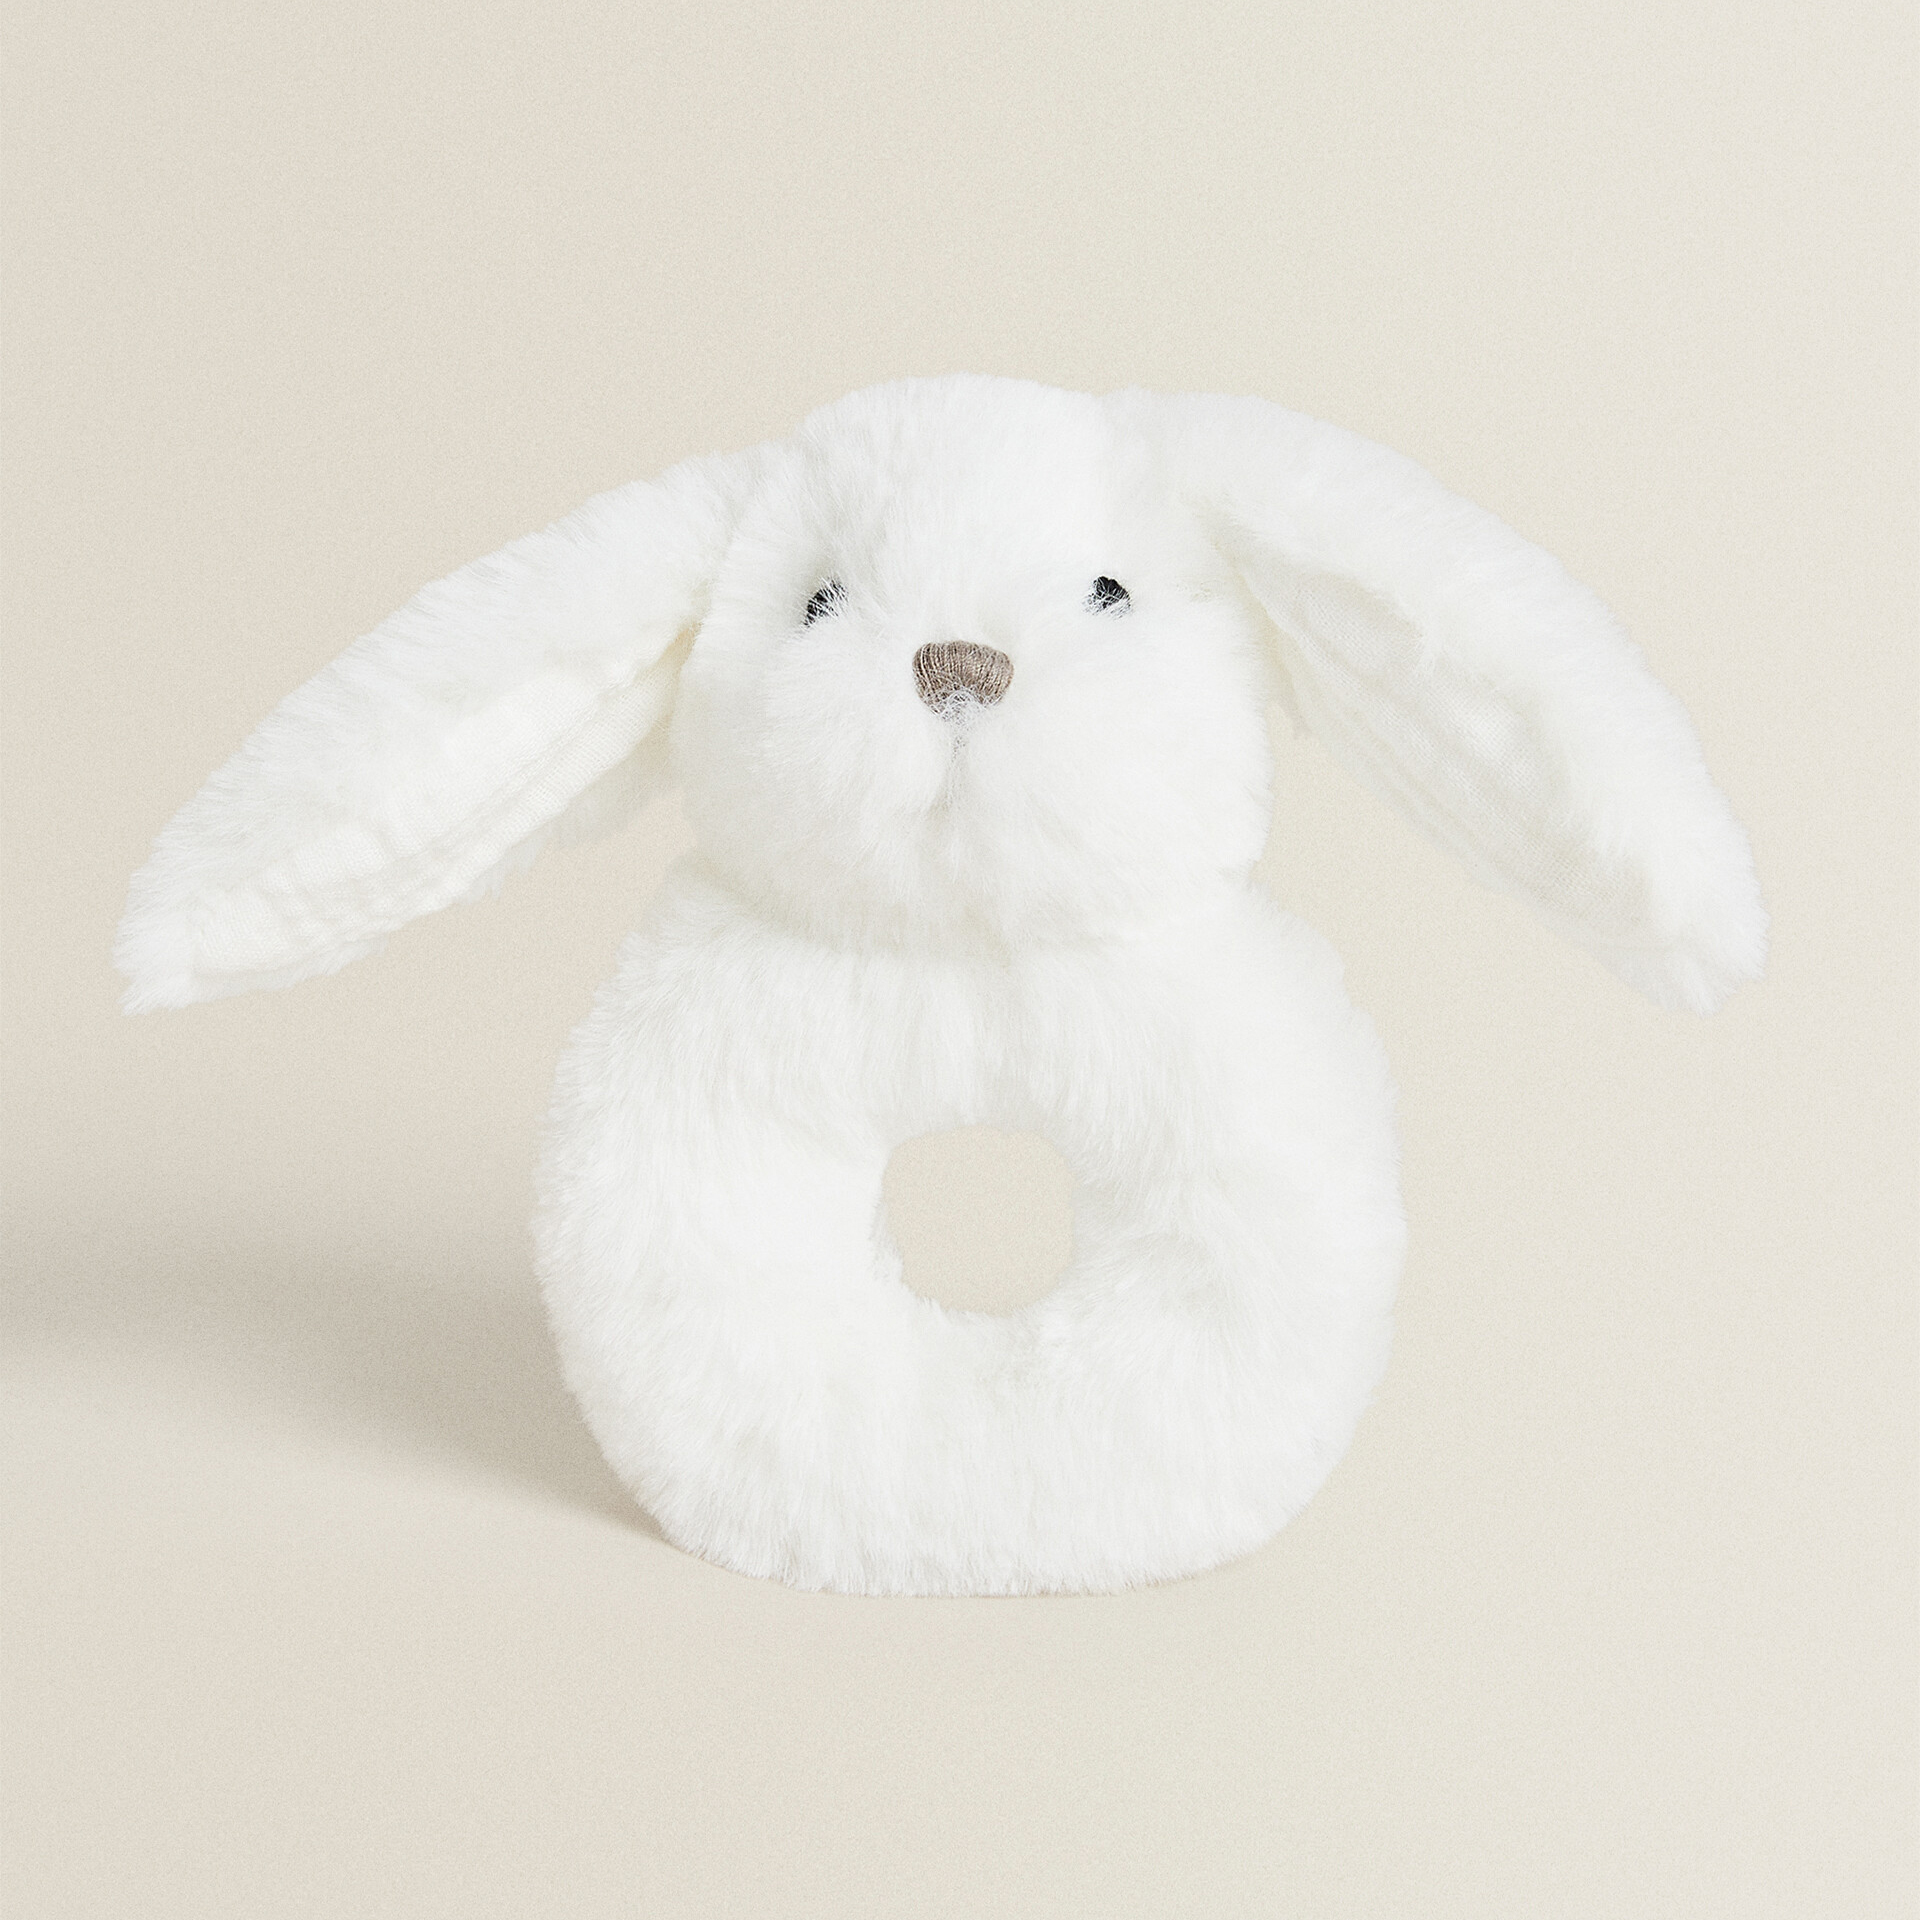 Мягкая игрушка-погремка кролик Zara Home, белый мягкая тканевая погремушка мяч для детей 0 12 месяцев мягкая плюшевая игрушка животное погремушка для младенцев мобильная развивающая сен